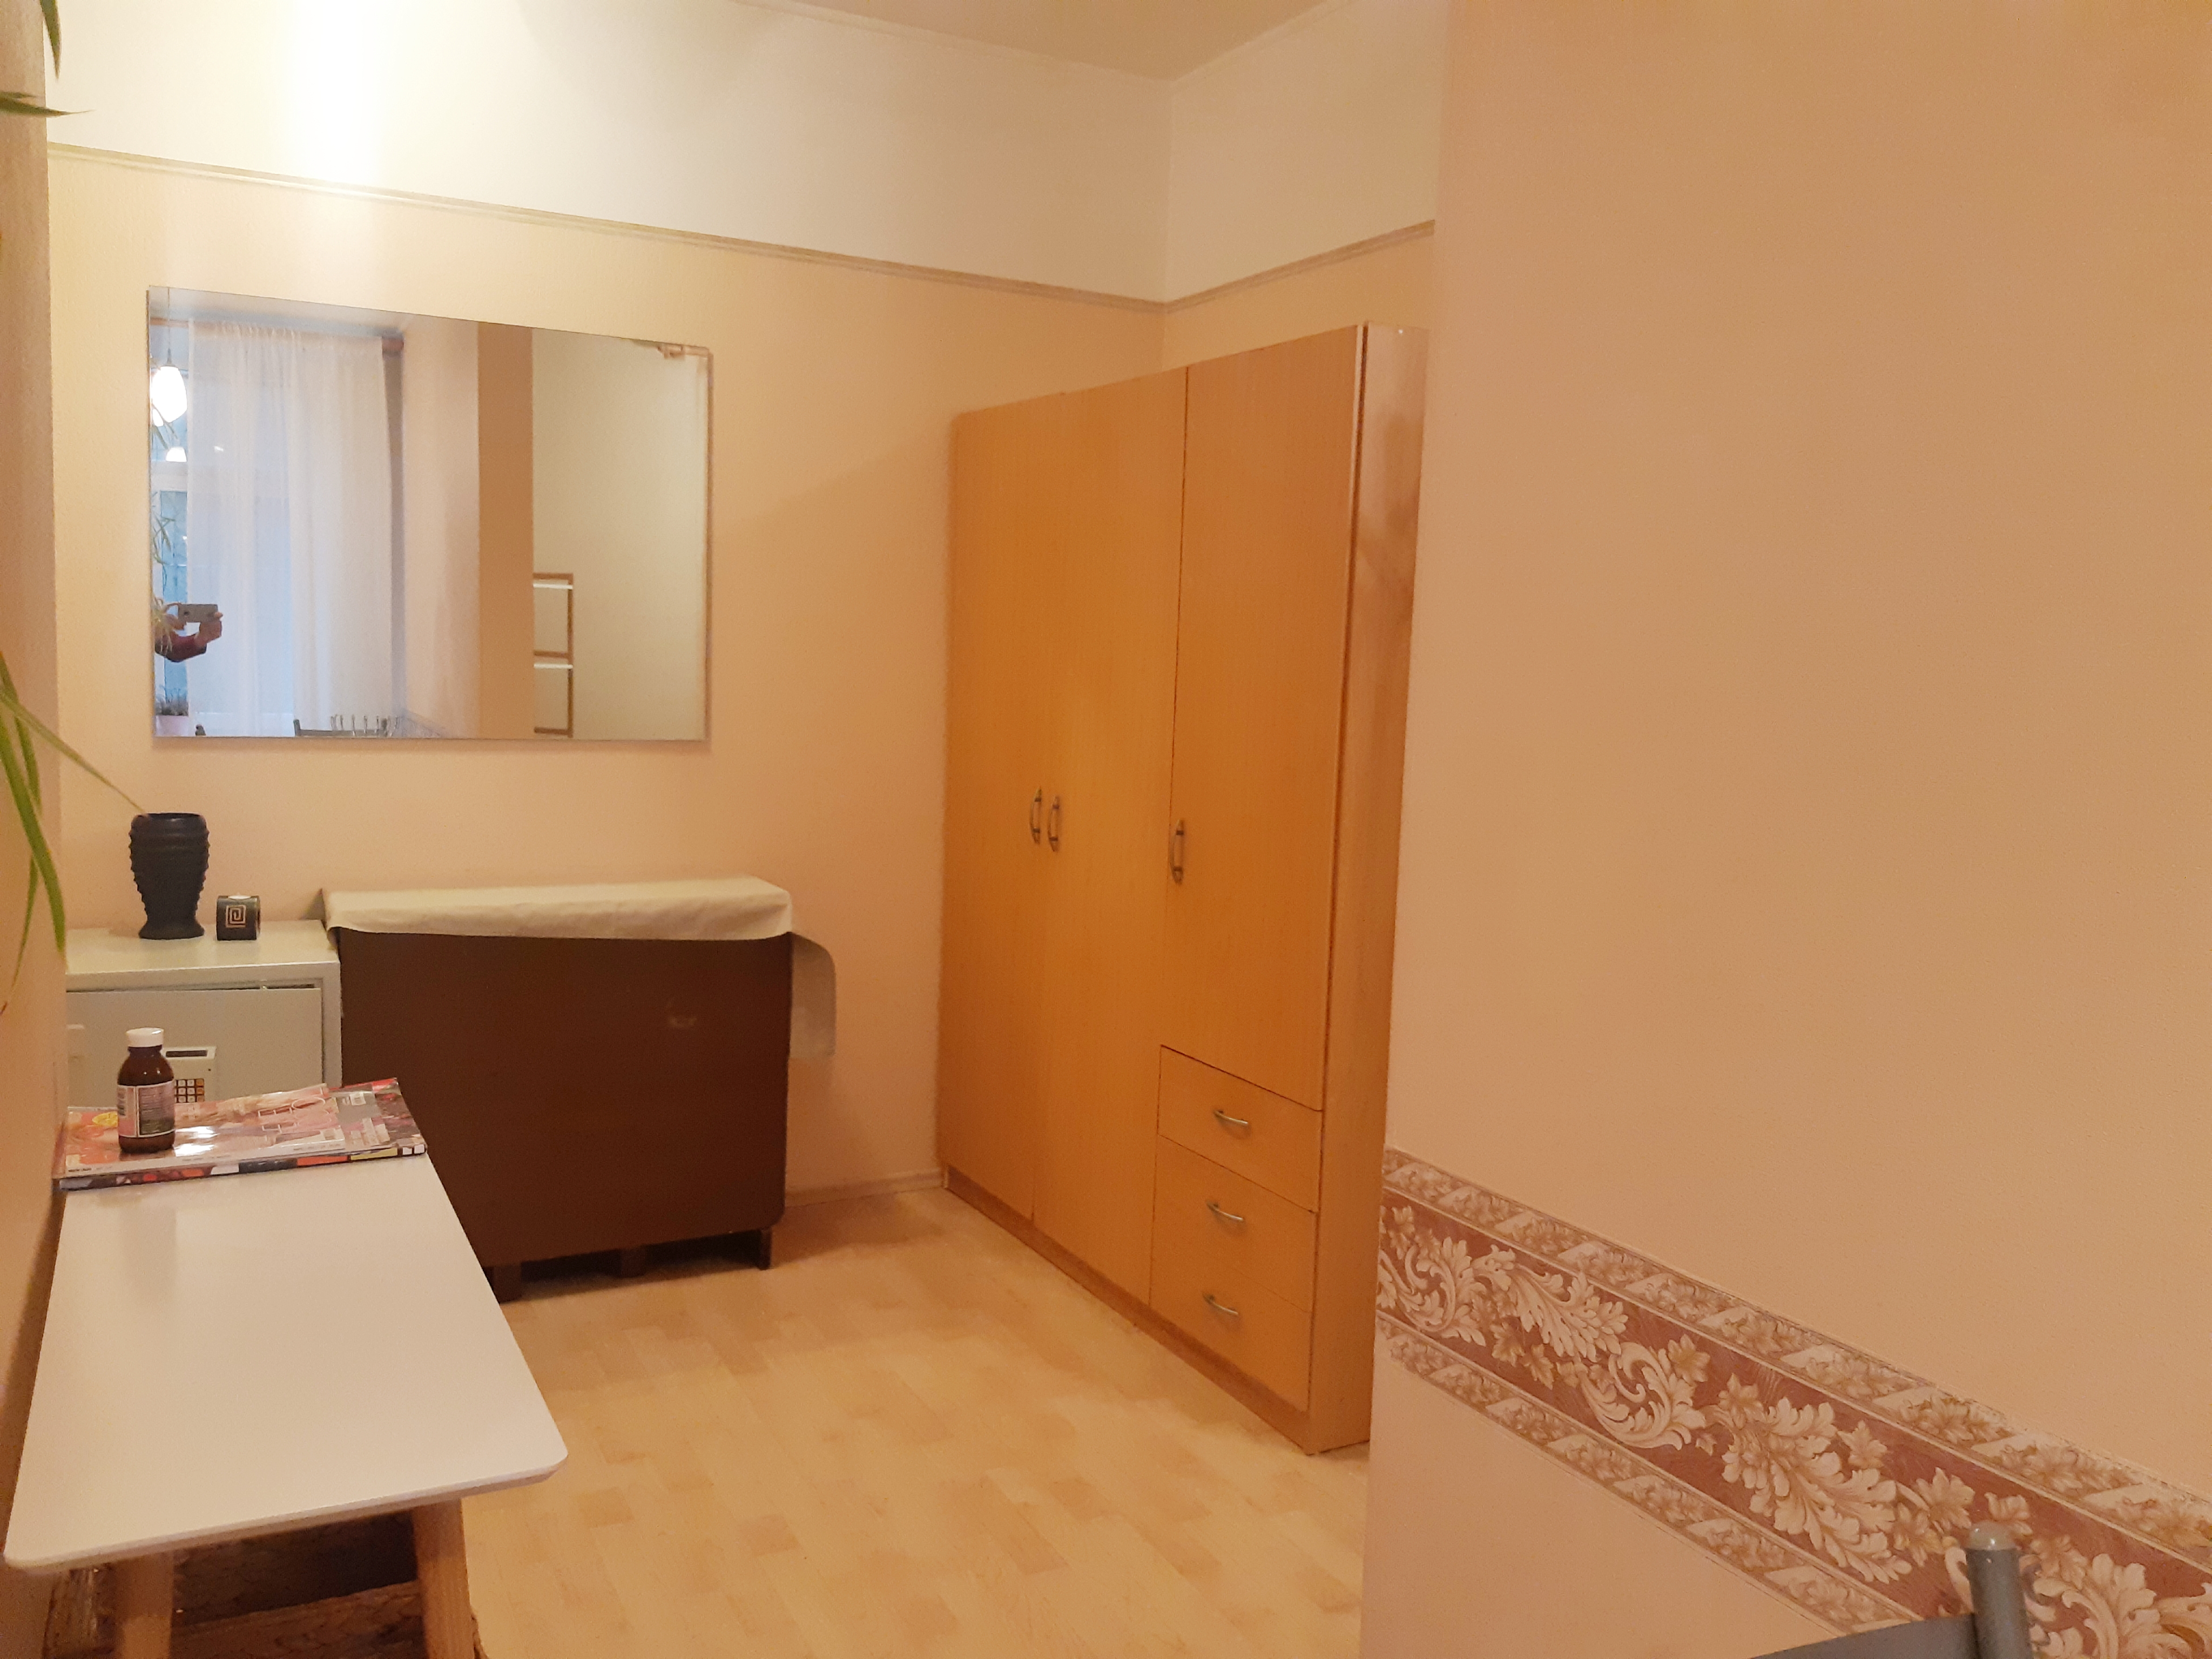 Apartment for rent, Čaka street 136 - Image 1